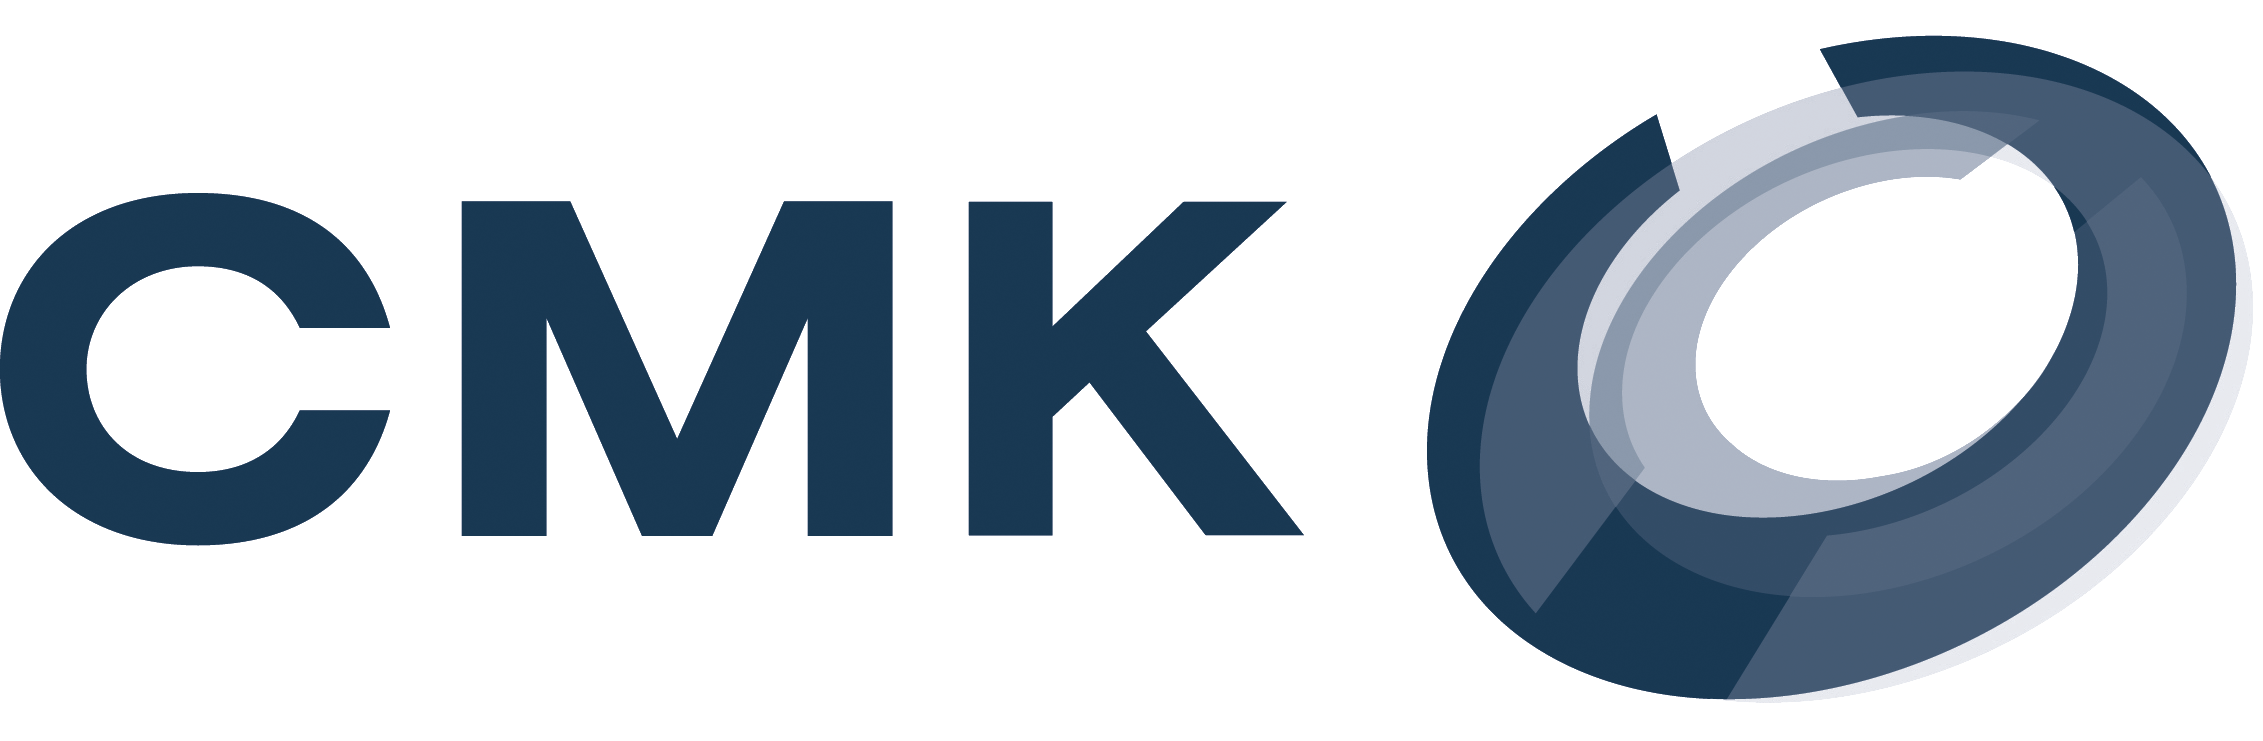 АО «Ступинская металлургическая компания» (СМК). Логотип СМК Ступино. Логотипа для компании СМК. АО СМК лого. Смк групп